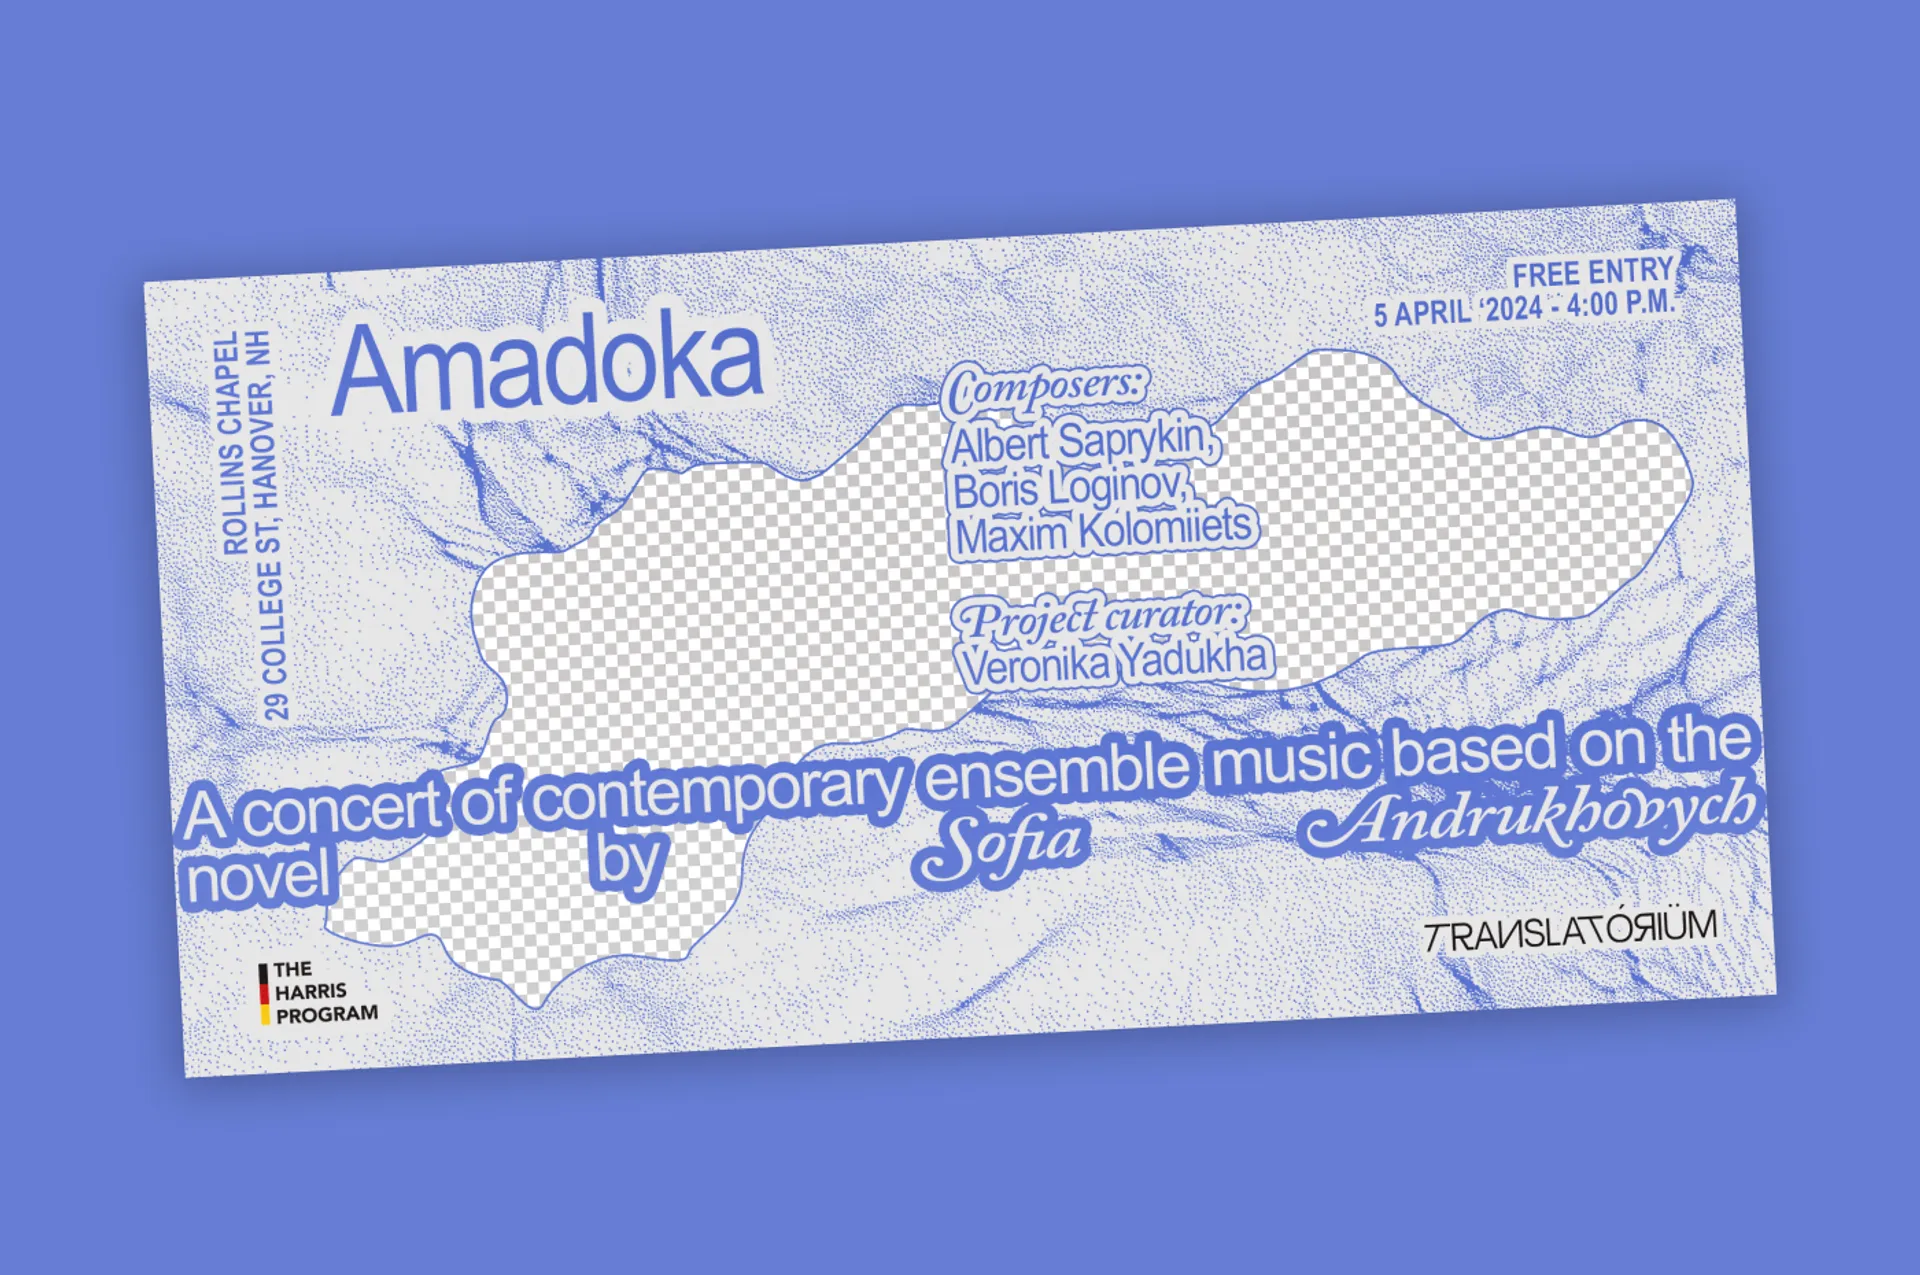 У США вперше відбудеться концерт за романом Софії Андрухович «Амадока»